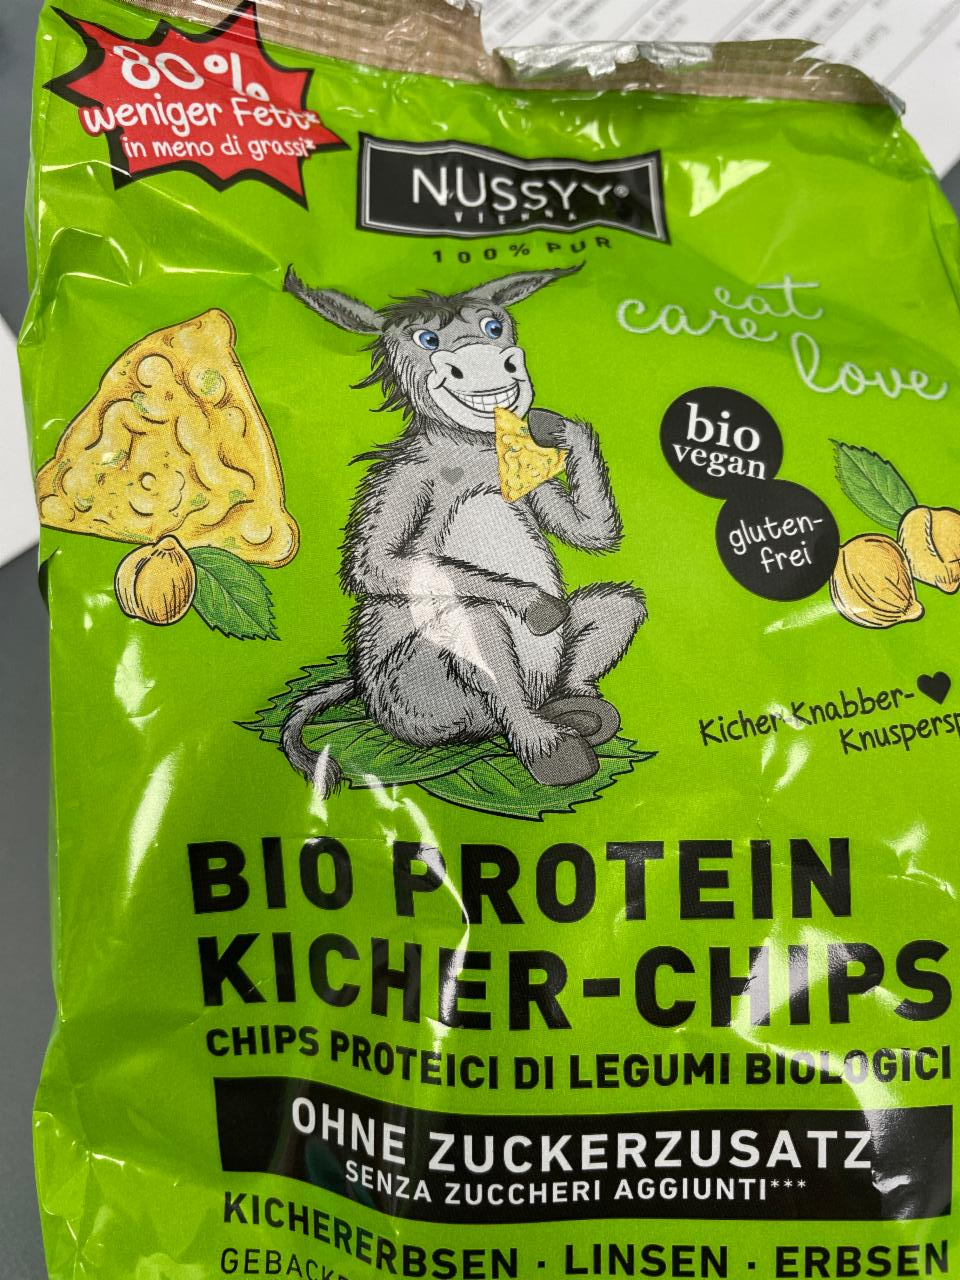 Fotografie - Bio Protein kicher-chips Nussyy